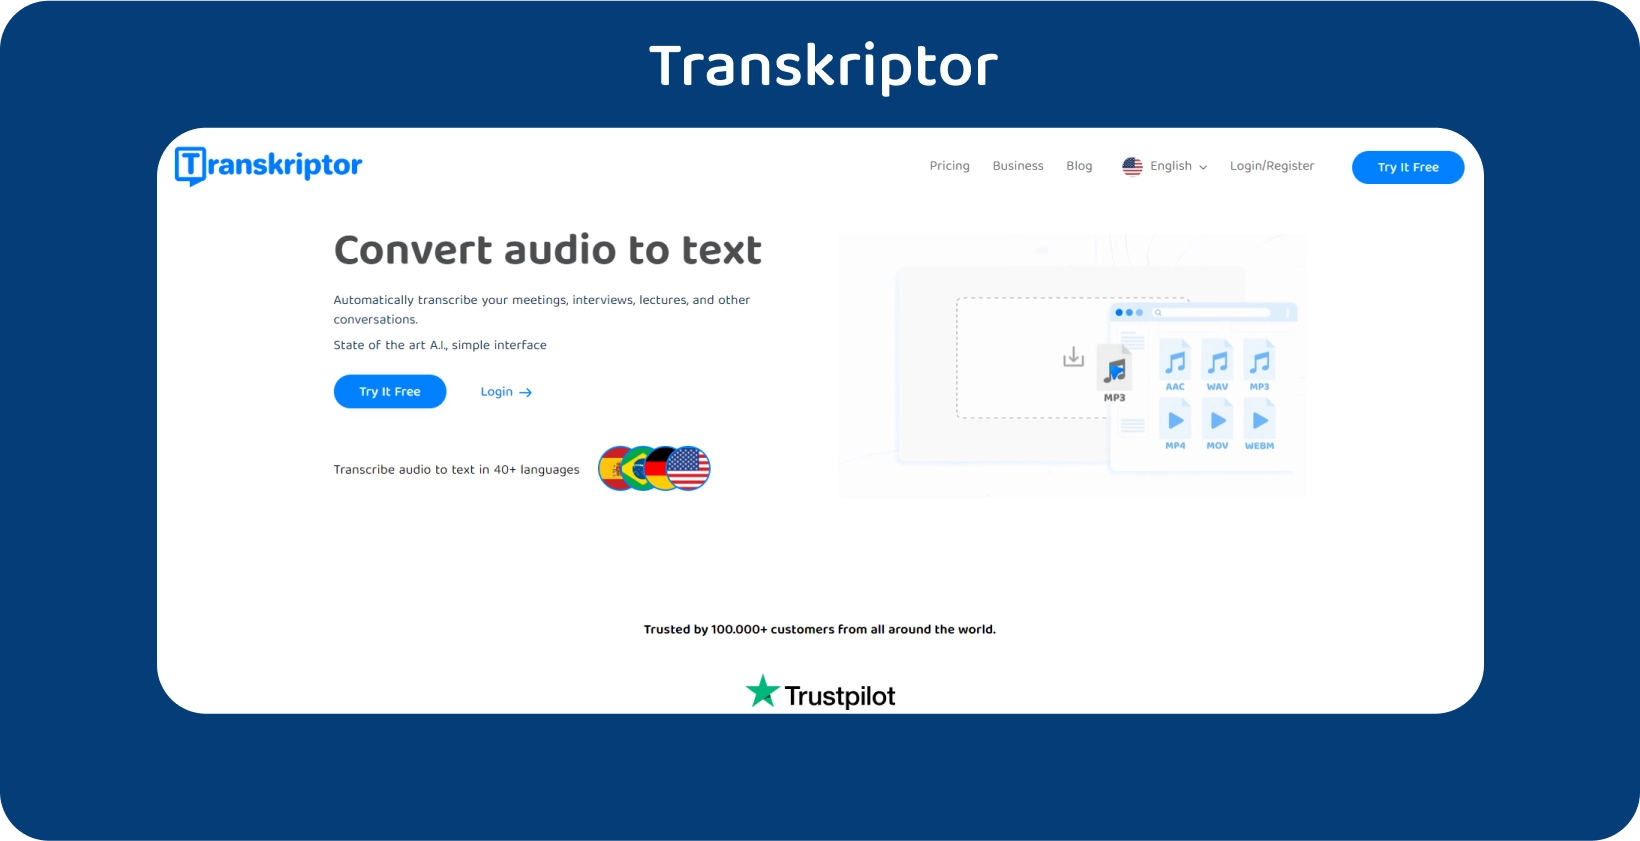 Transkriptor Homepage mit einem klaren Aufruf zum Handeln, der Audio-zu-Text-Transkriptionsdienste anbietet.